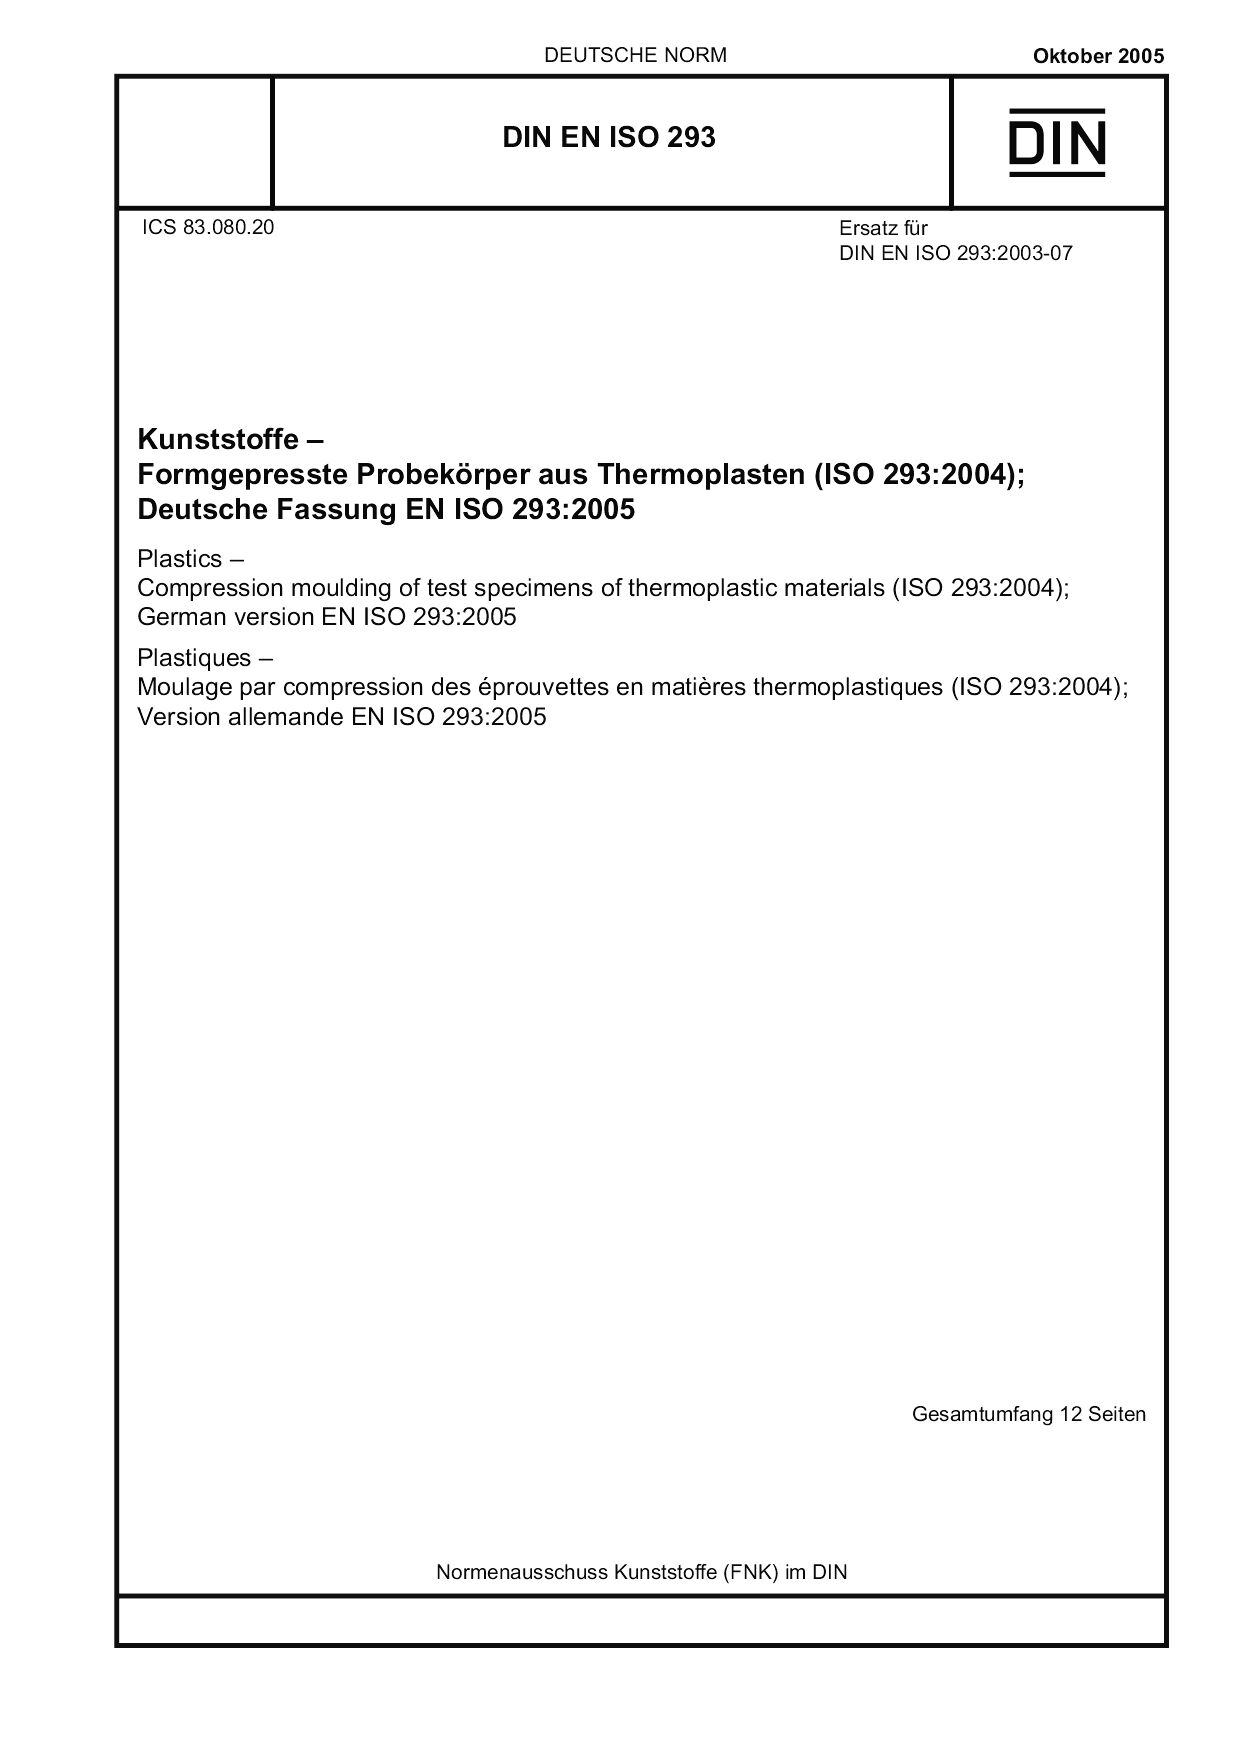 DIN EN ISO 293:2005